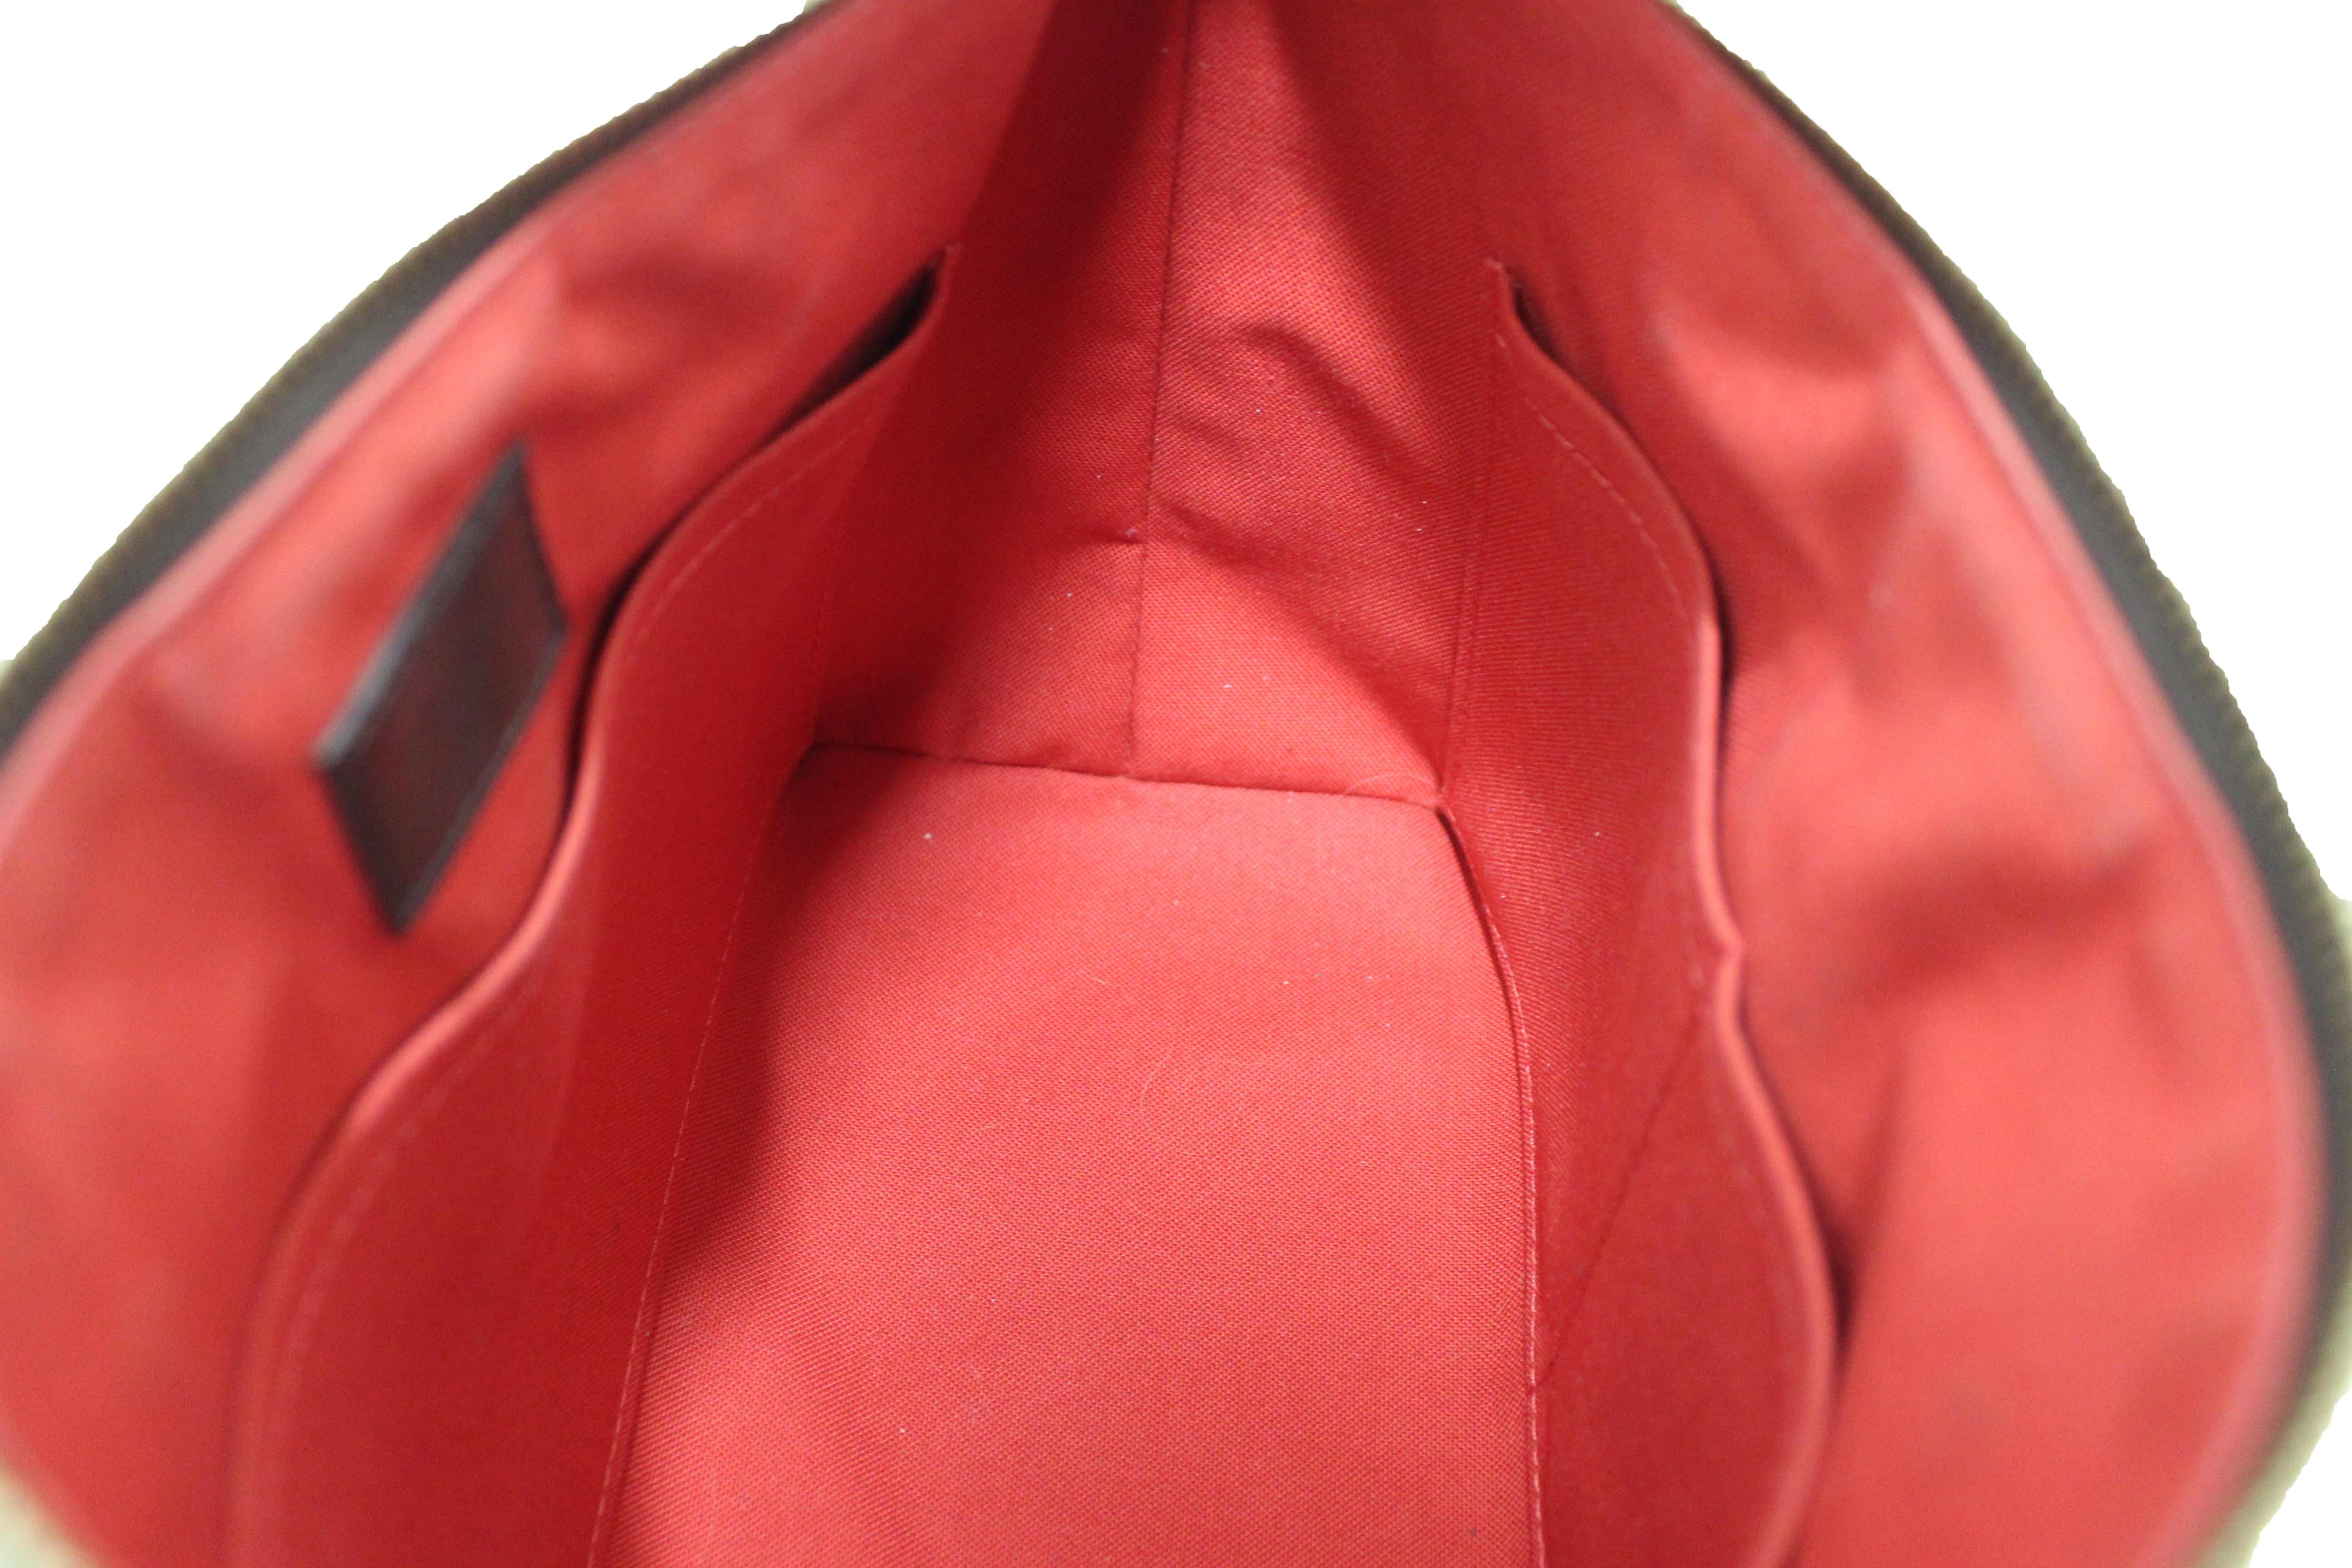 Authentic Louis Vuitton Damier Siena PM Shoulder Messenger Bag With Long Strap